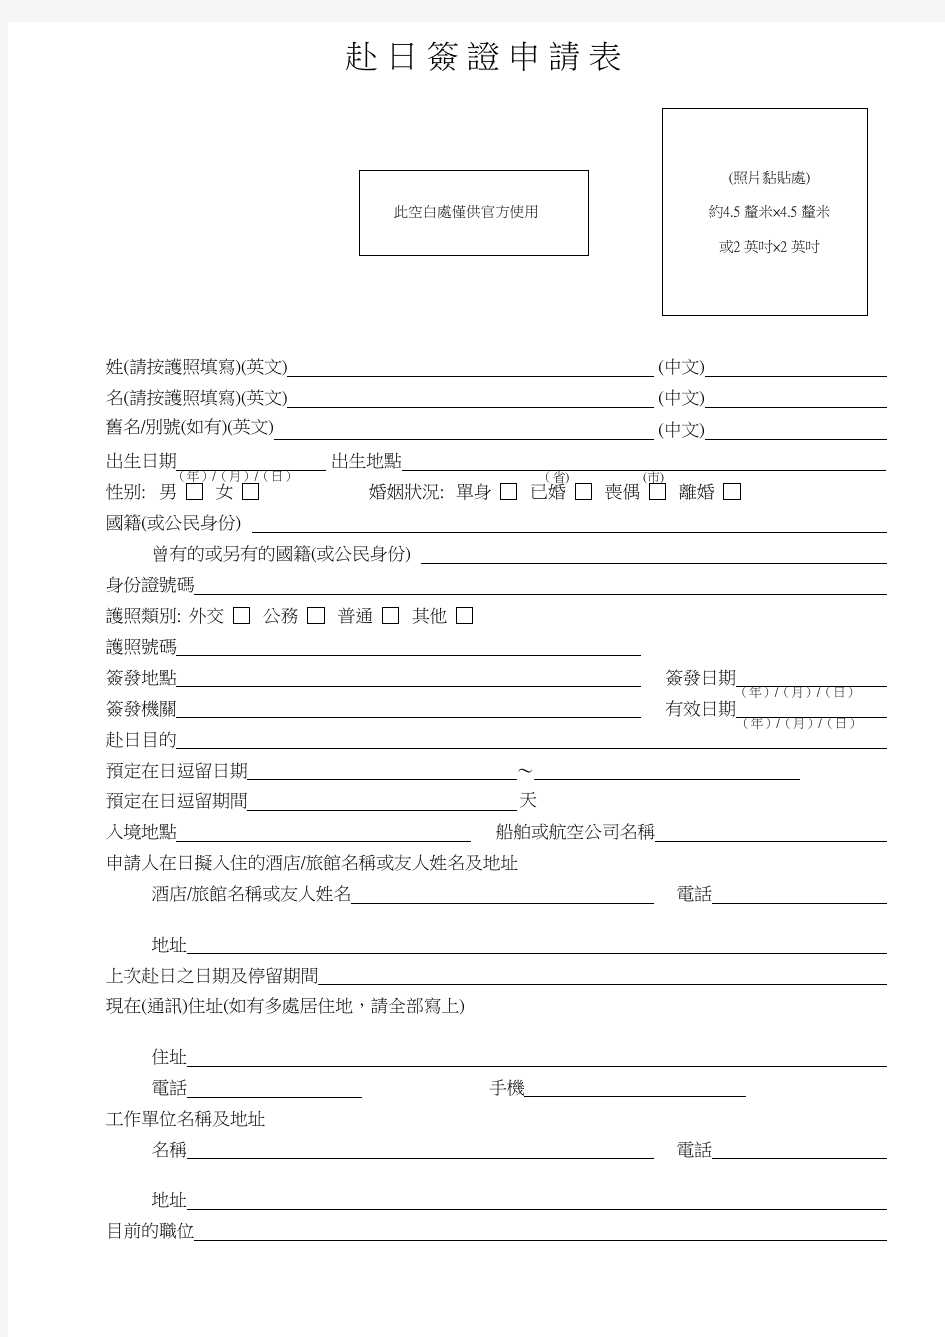 赴 日 签 证 申 请 表 - 在香港日本国総领事馆